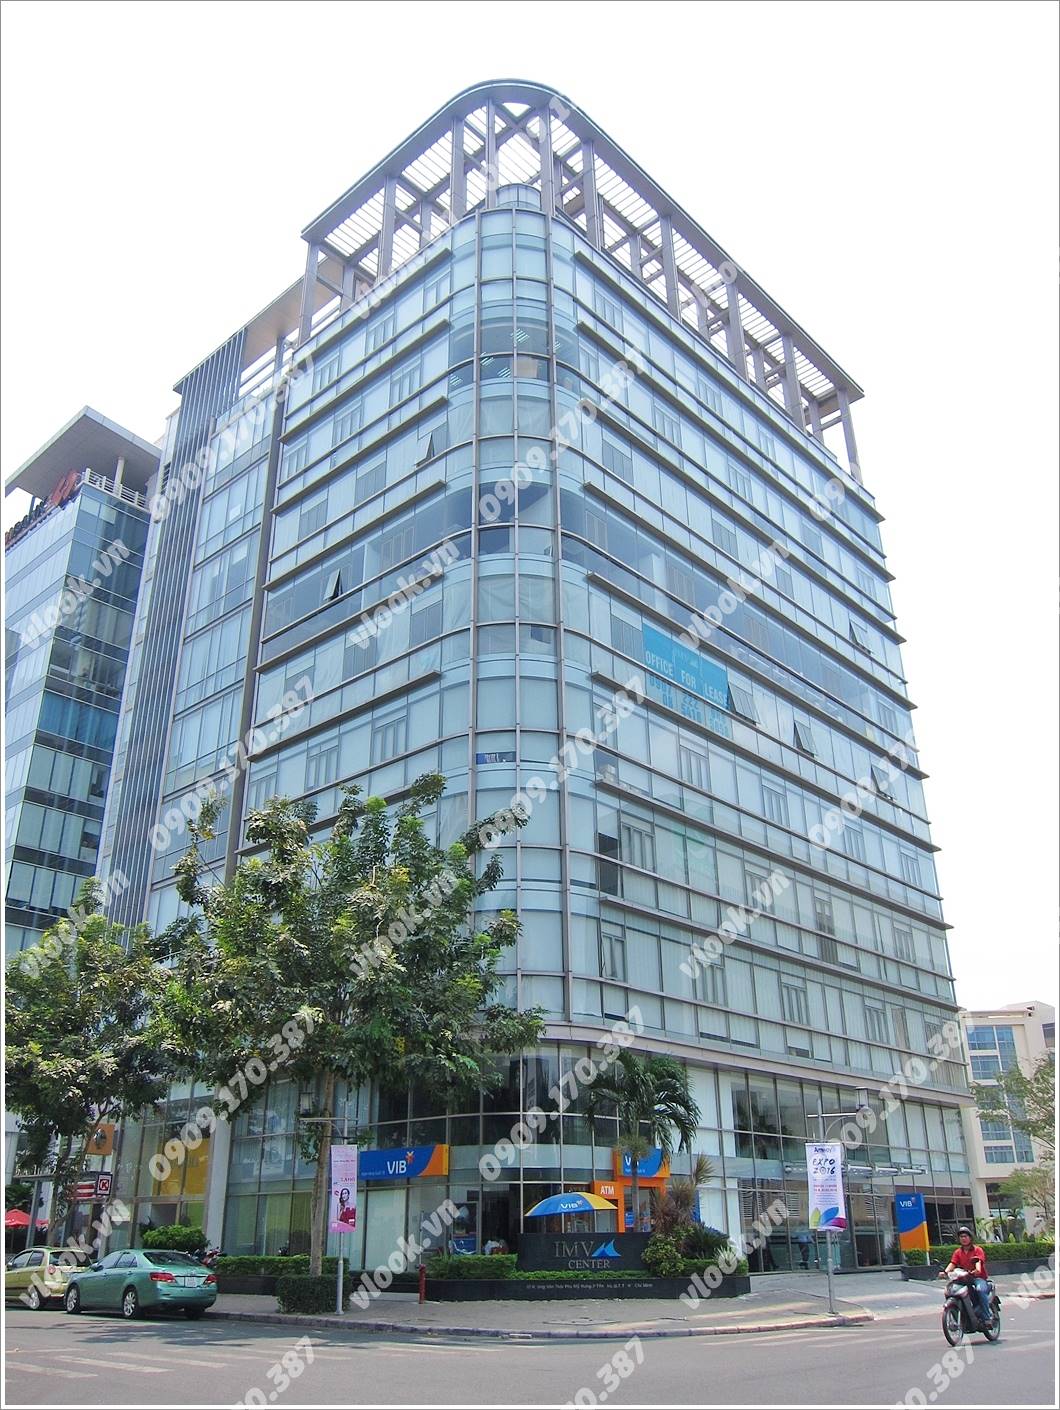 Mặt trước cao ốc cho thuê văn phòng IMV Building, Hoàng Văn Thái, Quận 7, TPHCM - vlook.vn